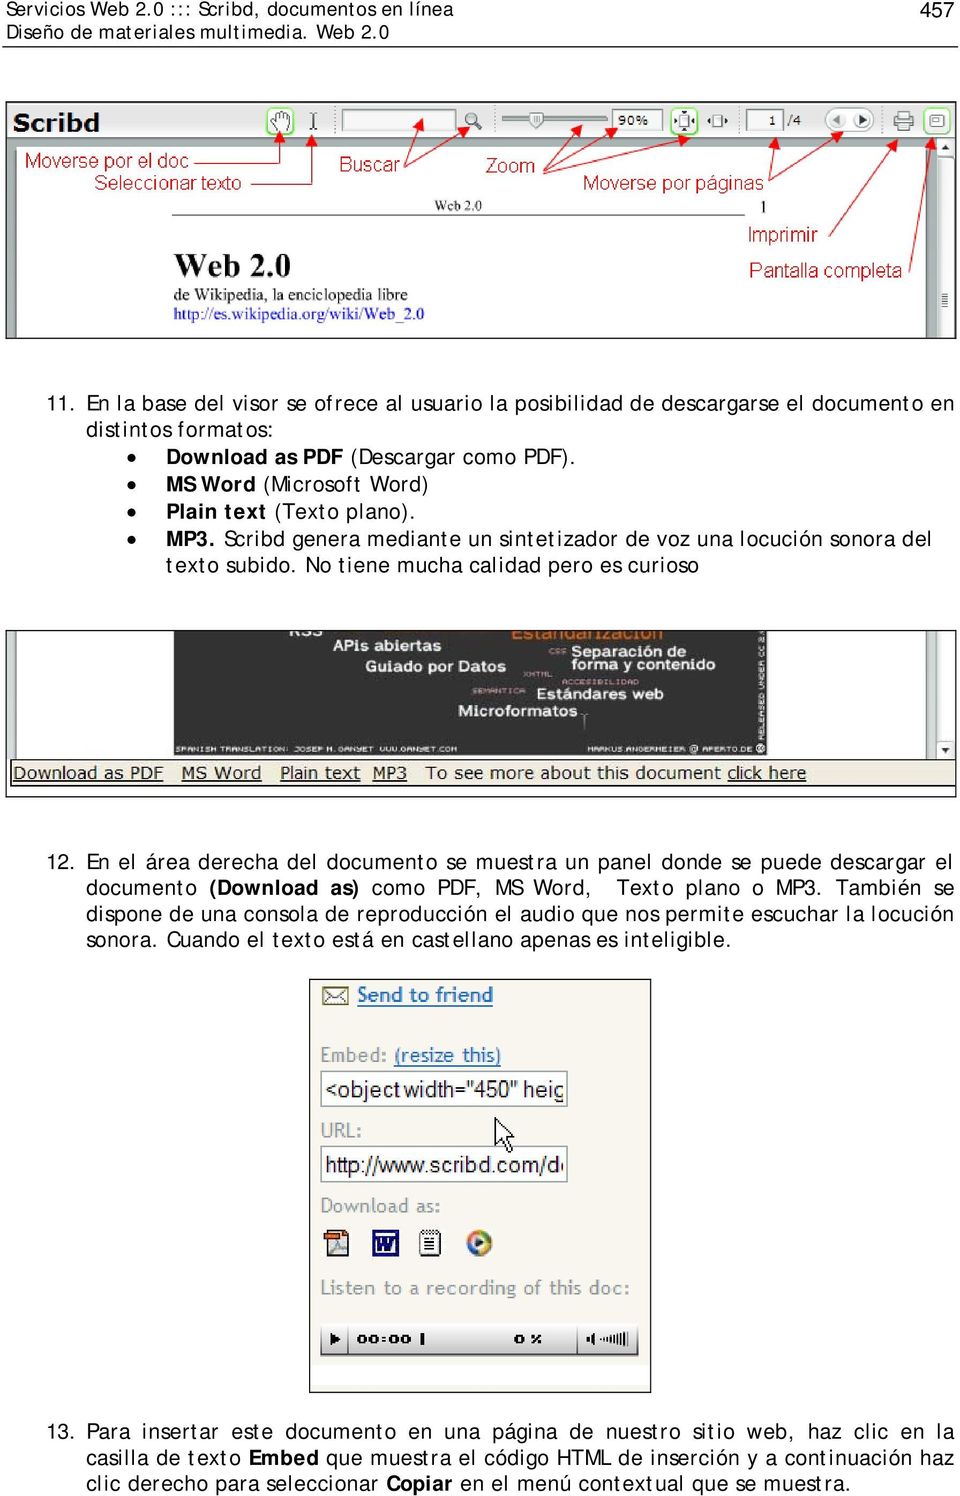 En el área derecha del documento se muestra un panel donde se puede descargar el documento (Download as) como PDF, MS Word, Texto plano o MP3.